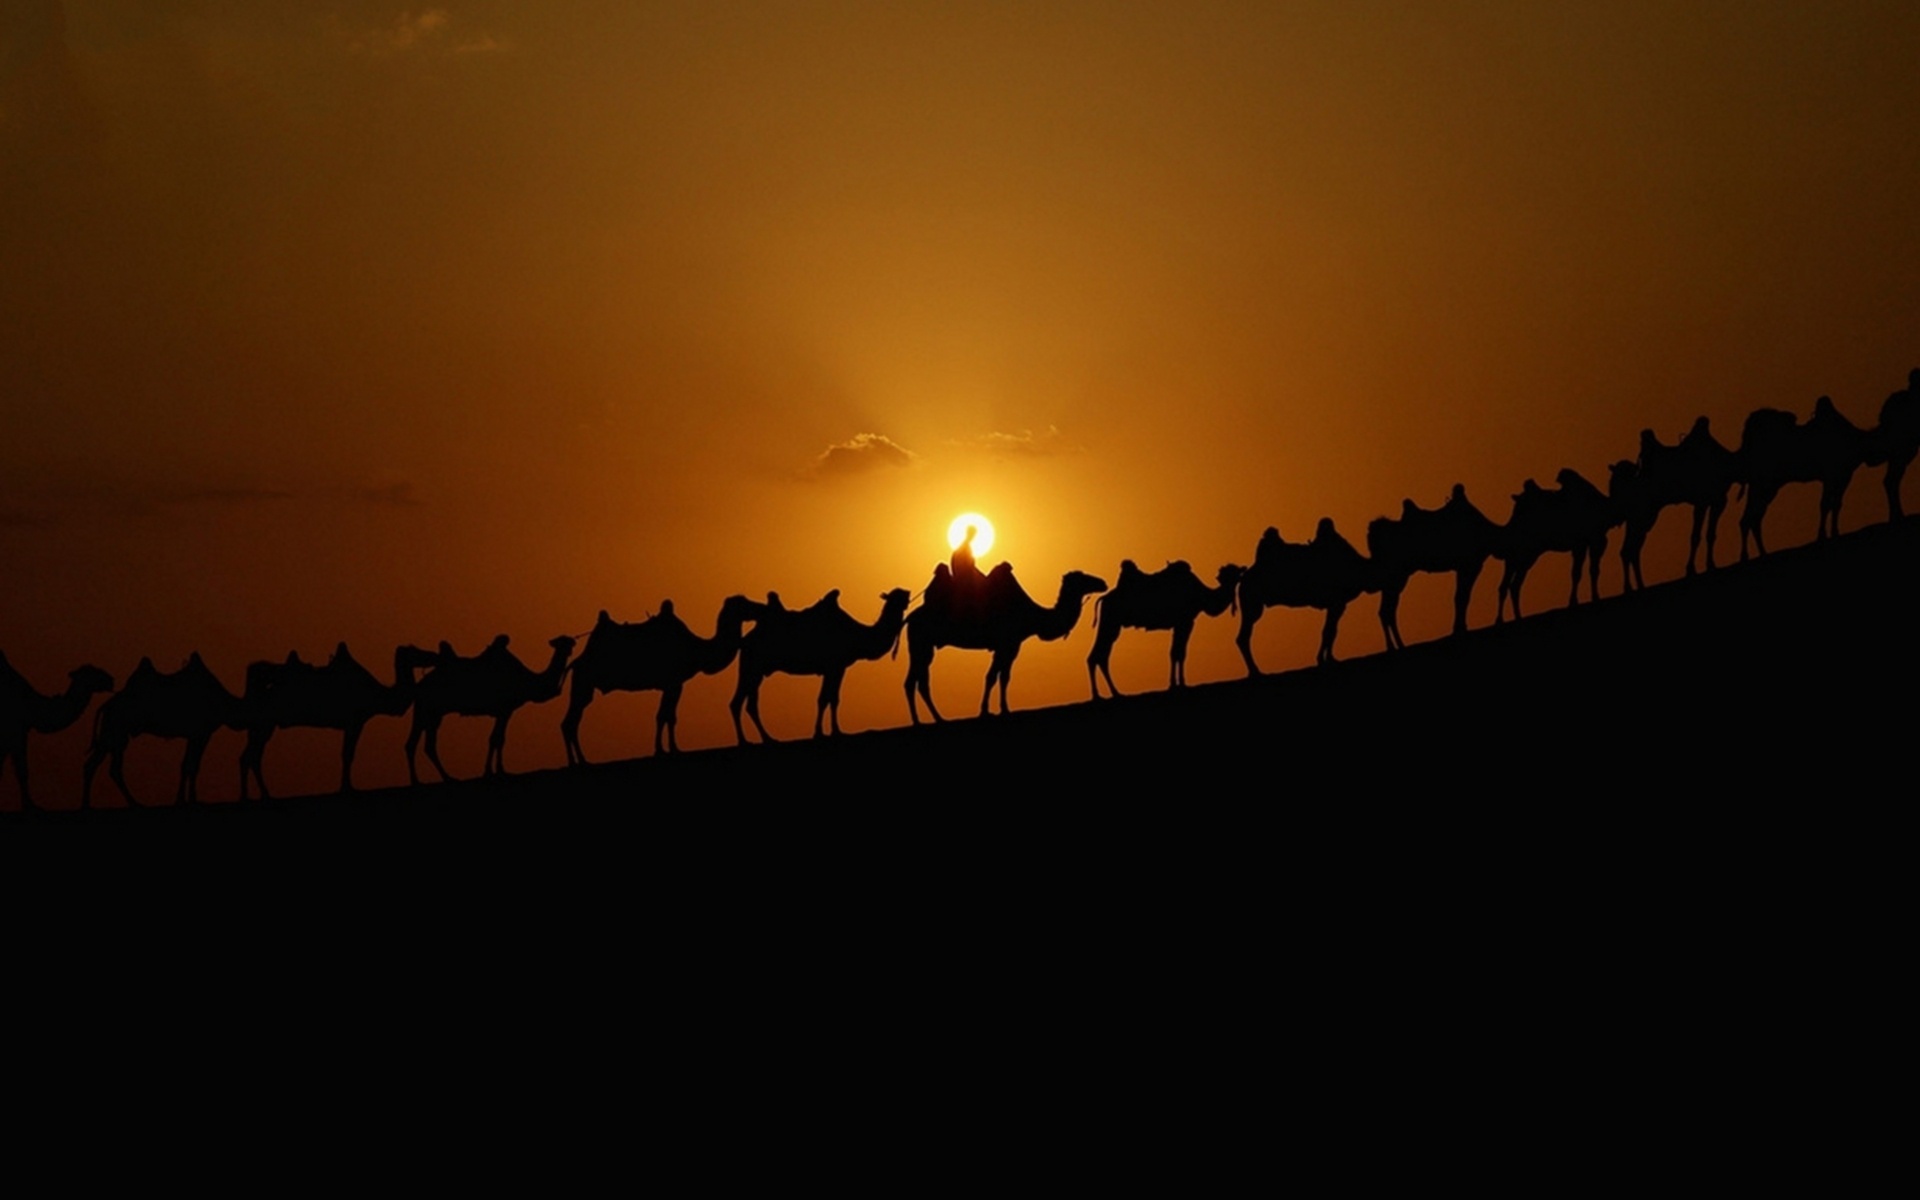 Караван полей. Картинка Караван верблюдов в пустыне. Верблюд в пустыне.